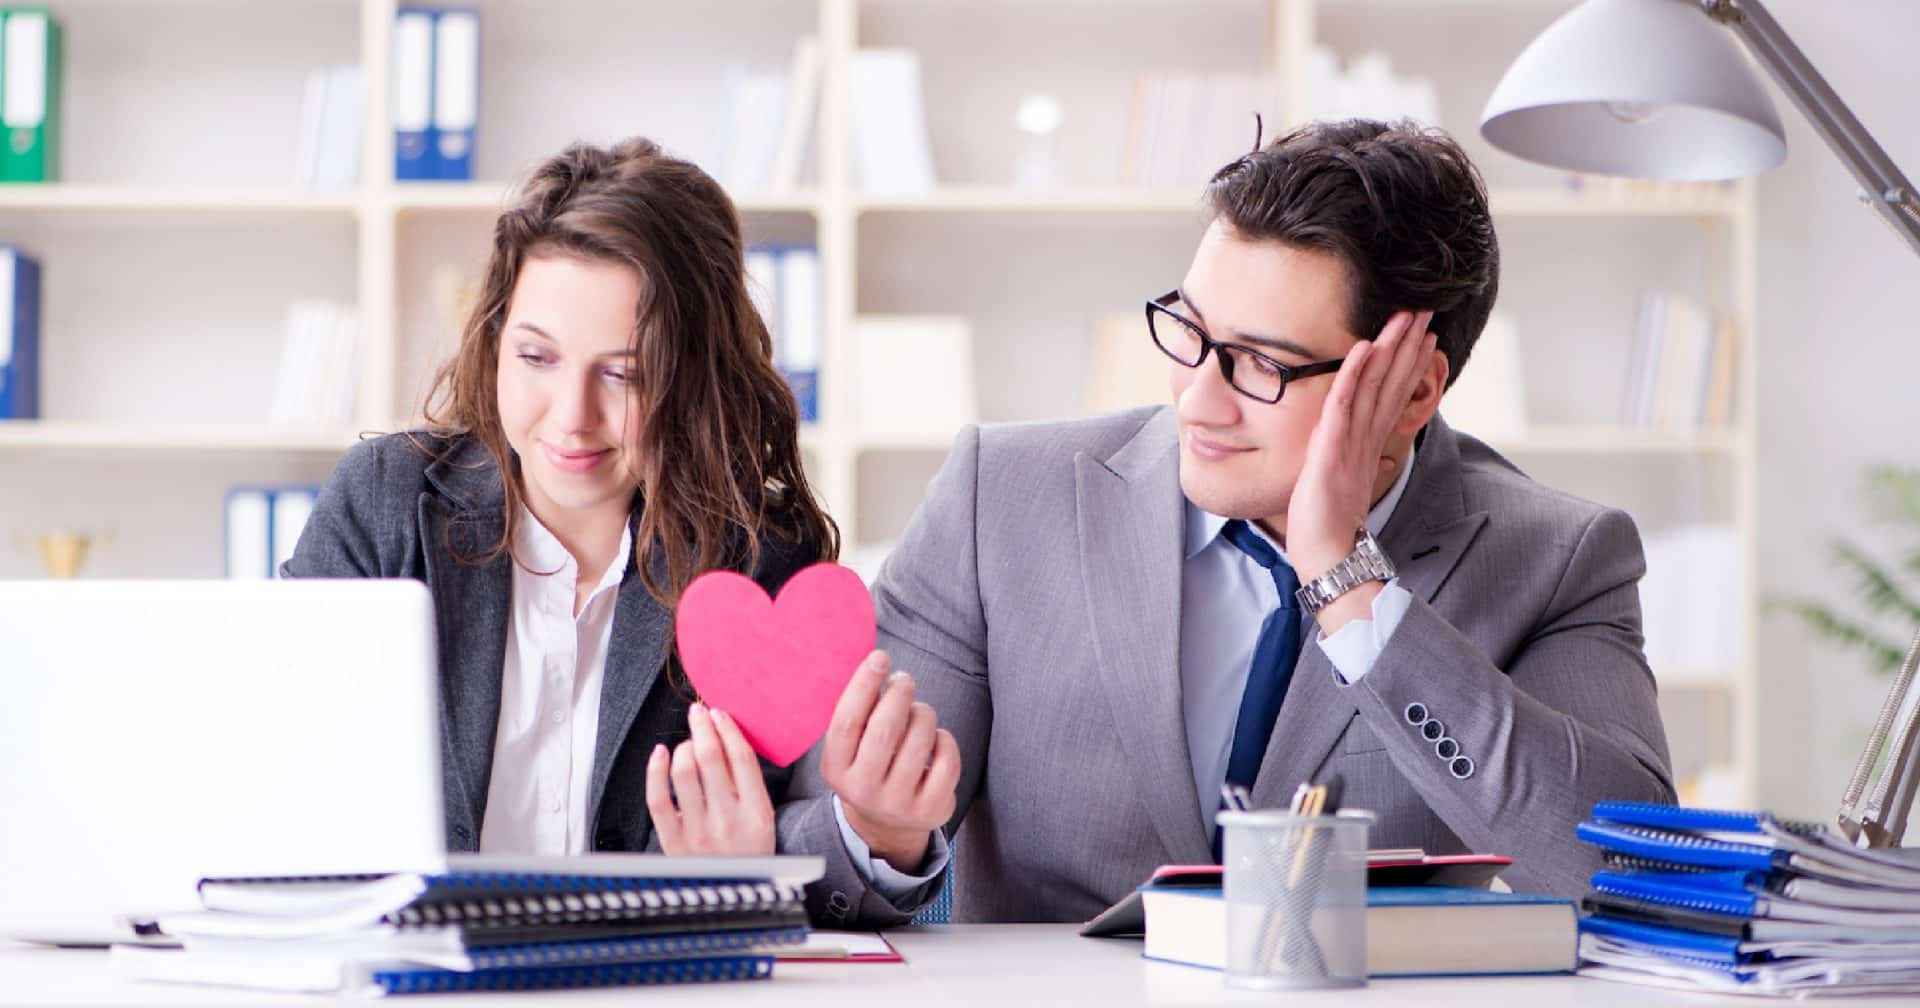 ผลสำรวจเผย พนักงาน 75% มองว่าความรักในที่ทำงานอาจทำให้เกิดการเลือกที่รักมักที่ชัง